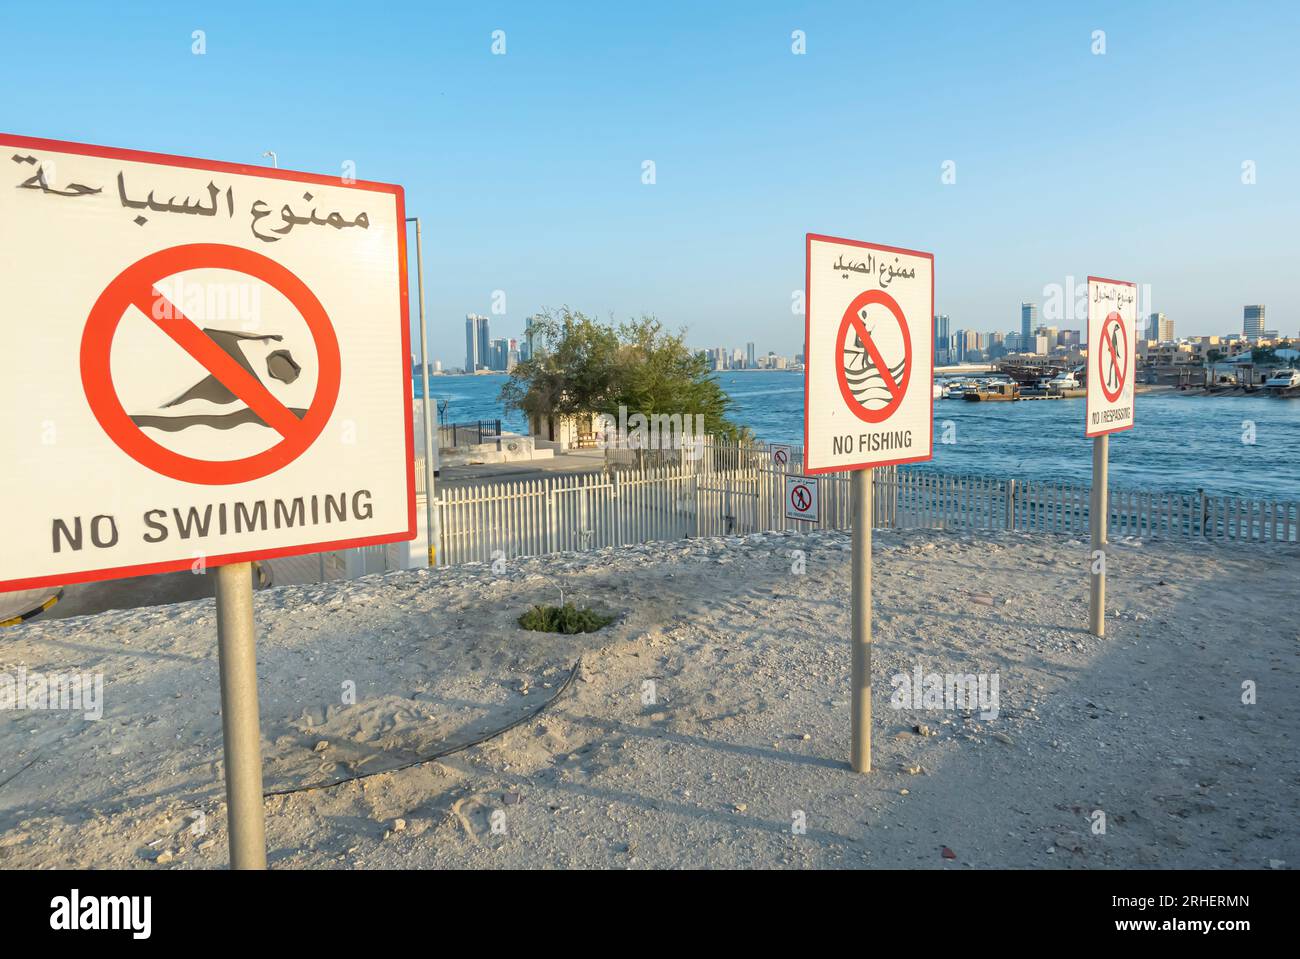 No swimming sign, no fishing sign, no trespassing signs, safety signs Muharaq Bahrain Stock Photo